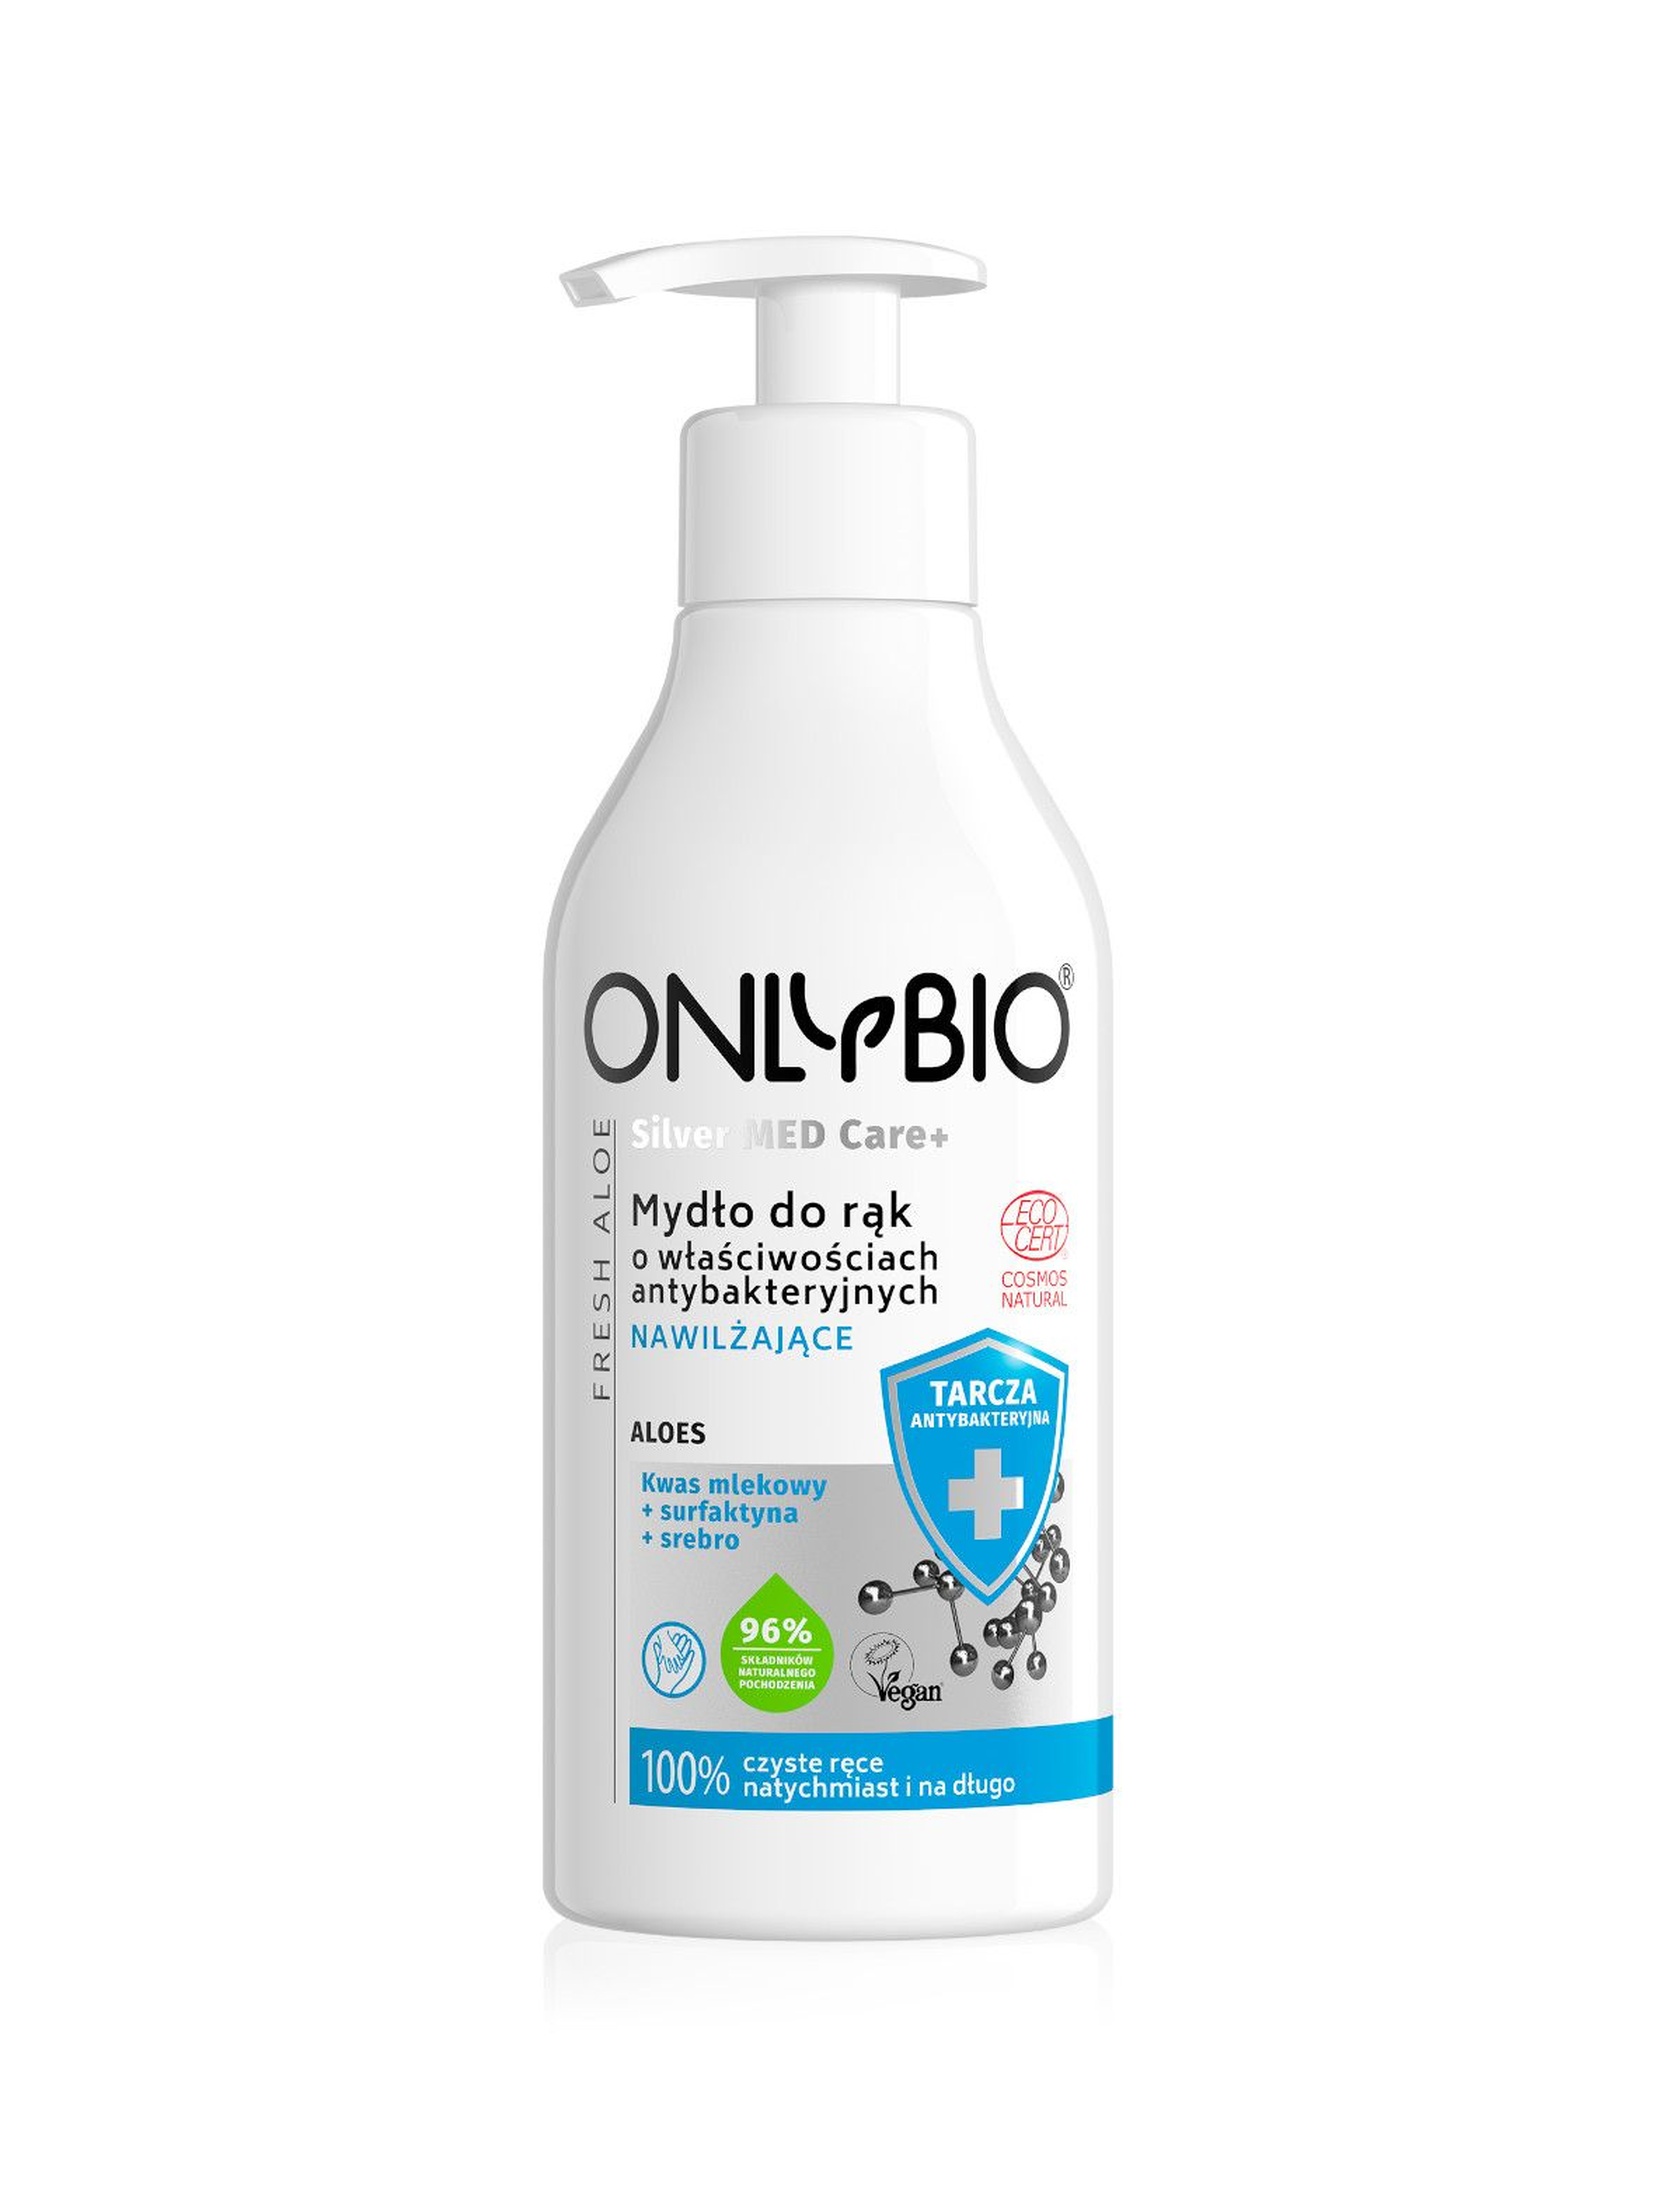 Mydło nawilżające do rąk o właściwościach antybakteryjnych OnlyBio 250ml